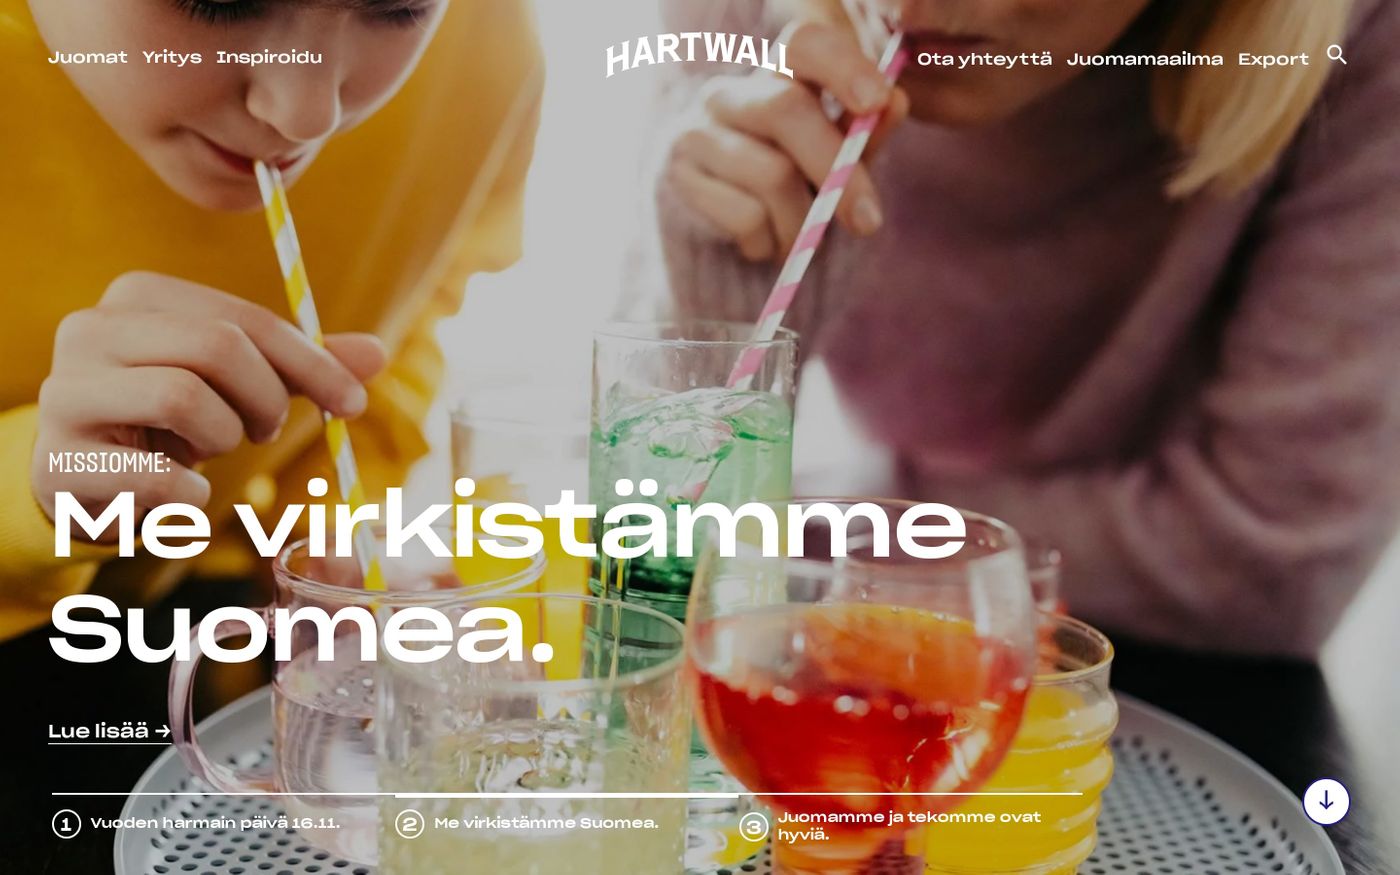 Screenshot of Hartwall website